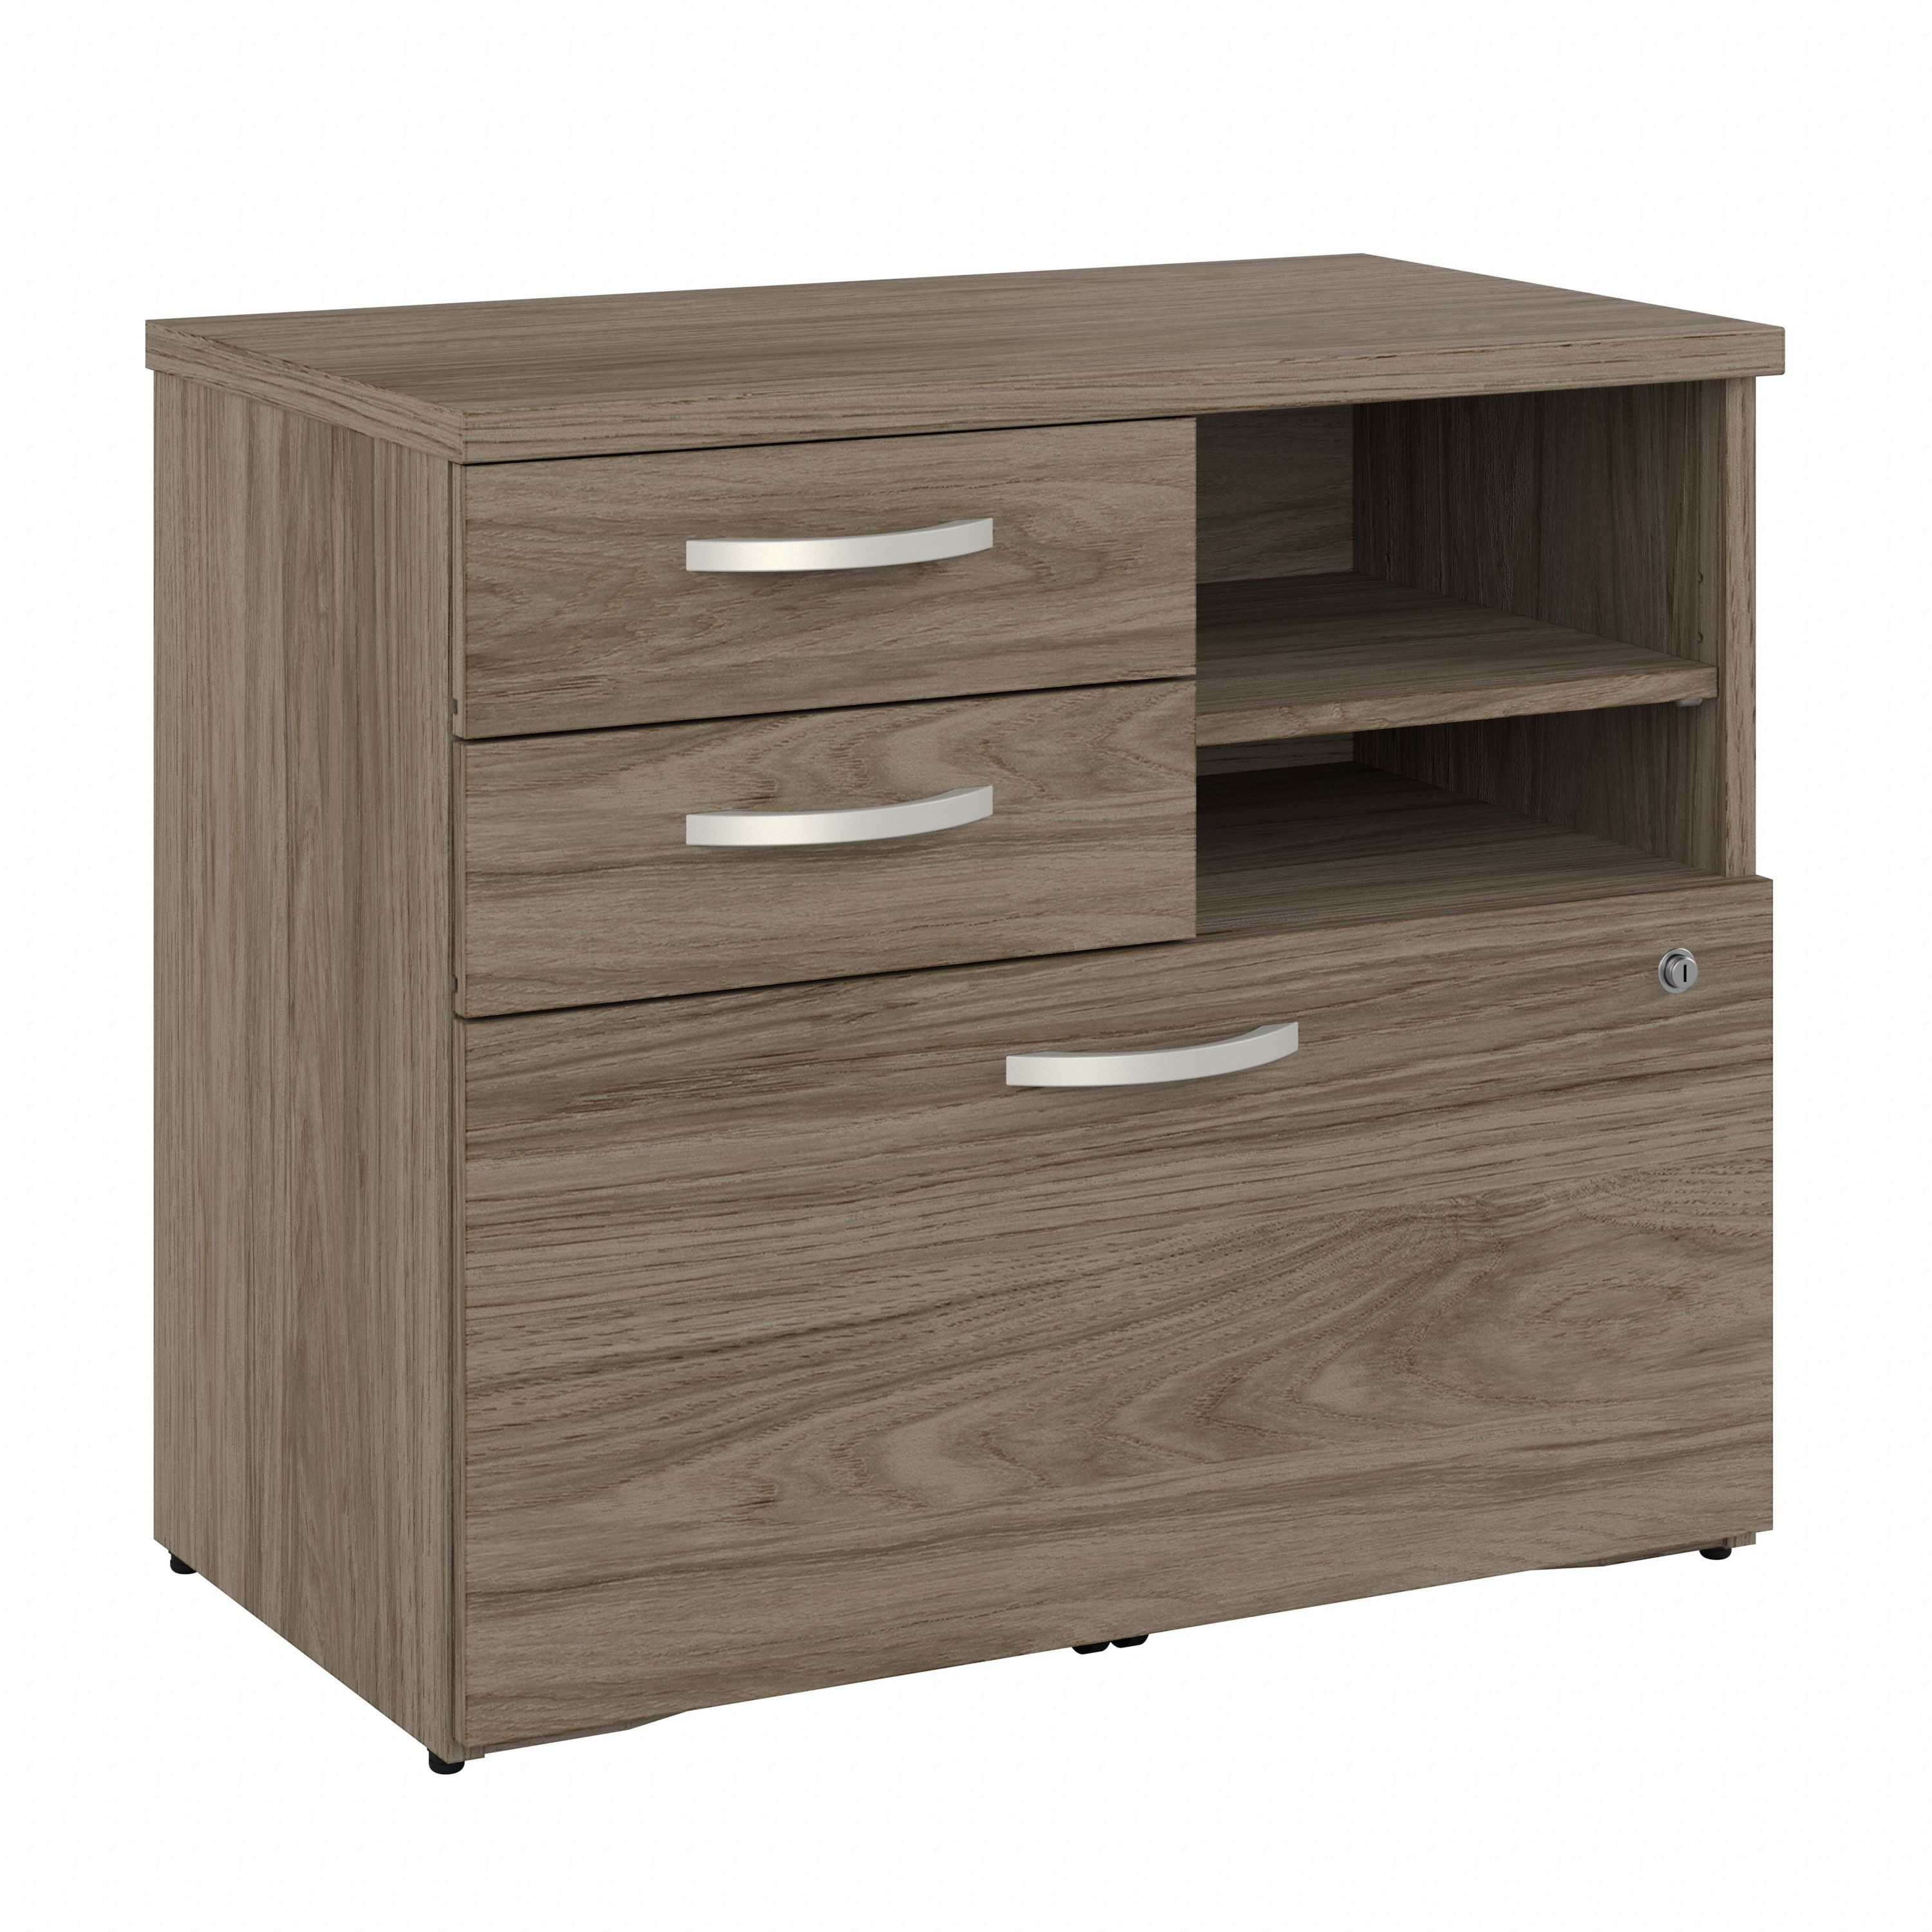 Shop Bush Business Furniture Studio C Office Storage Cabinet with Drawers and Shelves 02 SCF130MHSU #color_modern hickory